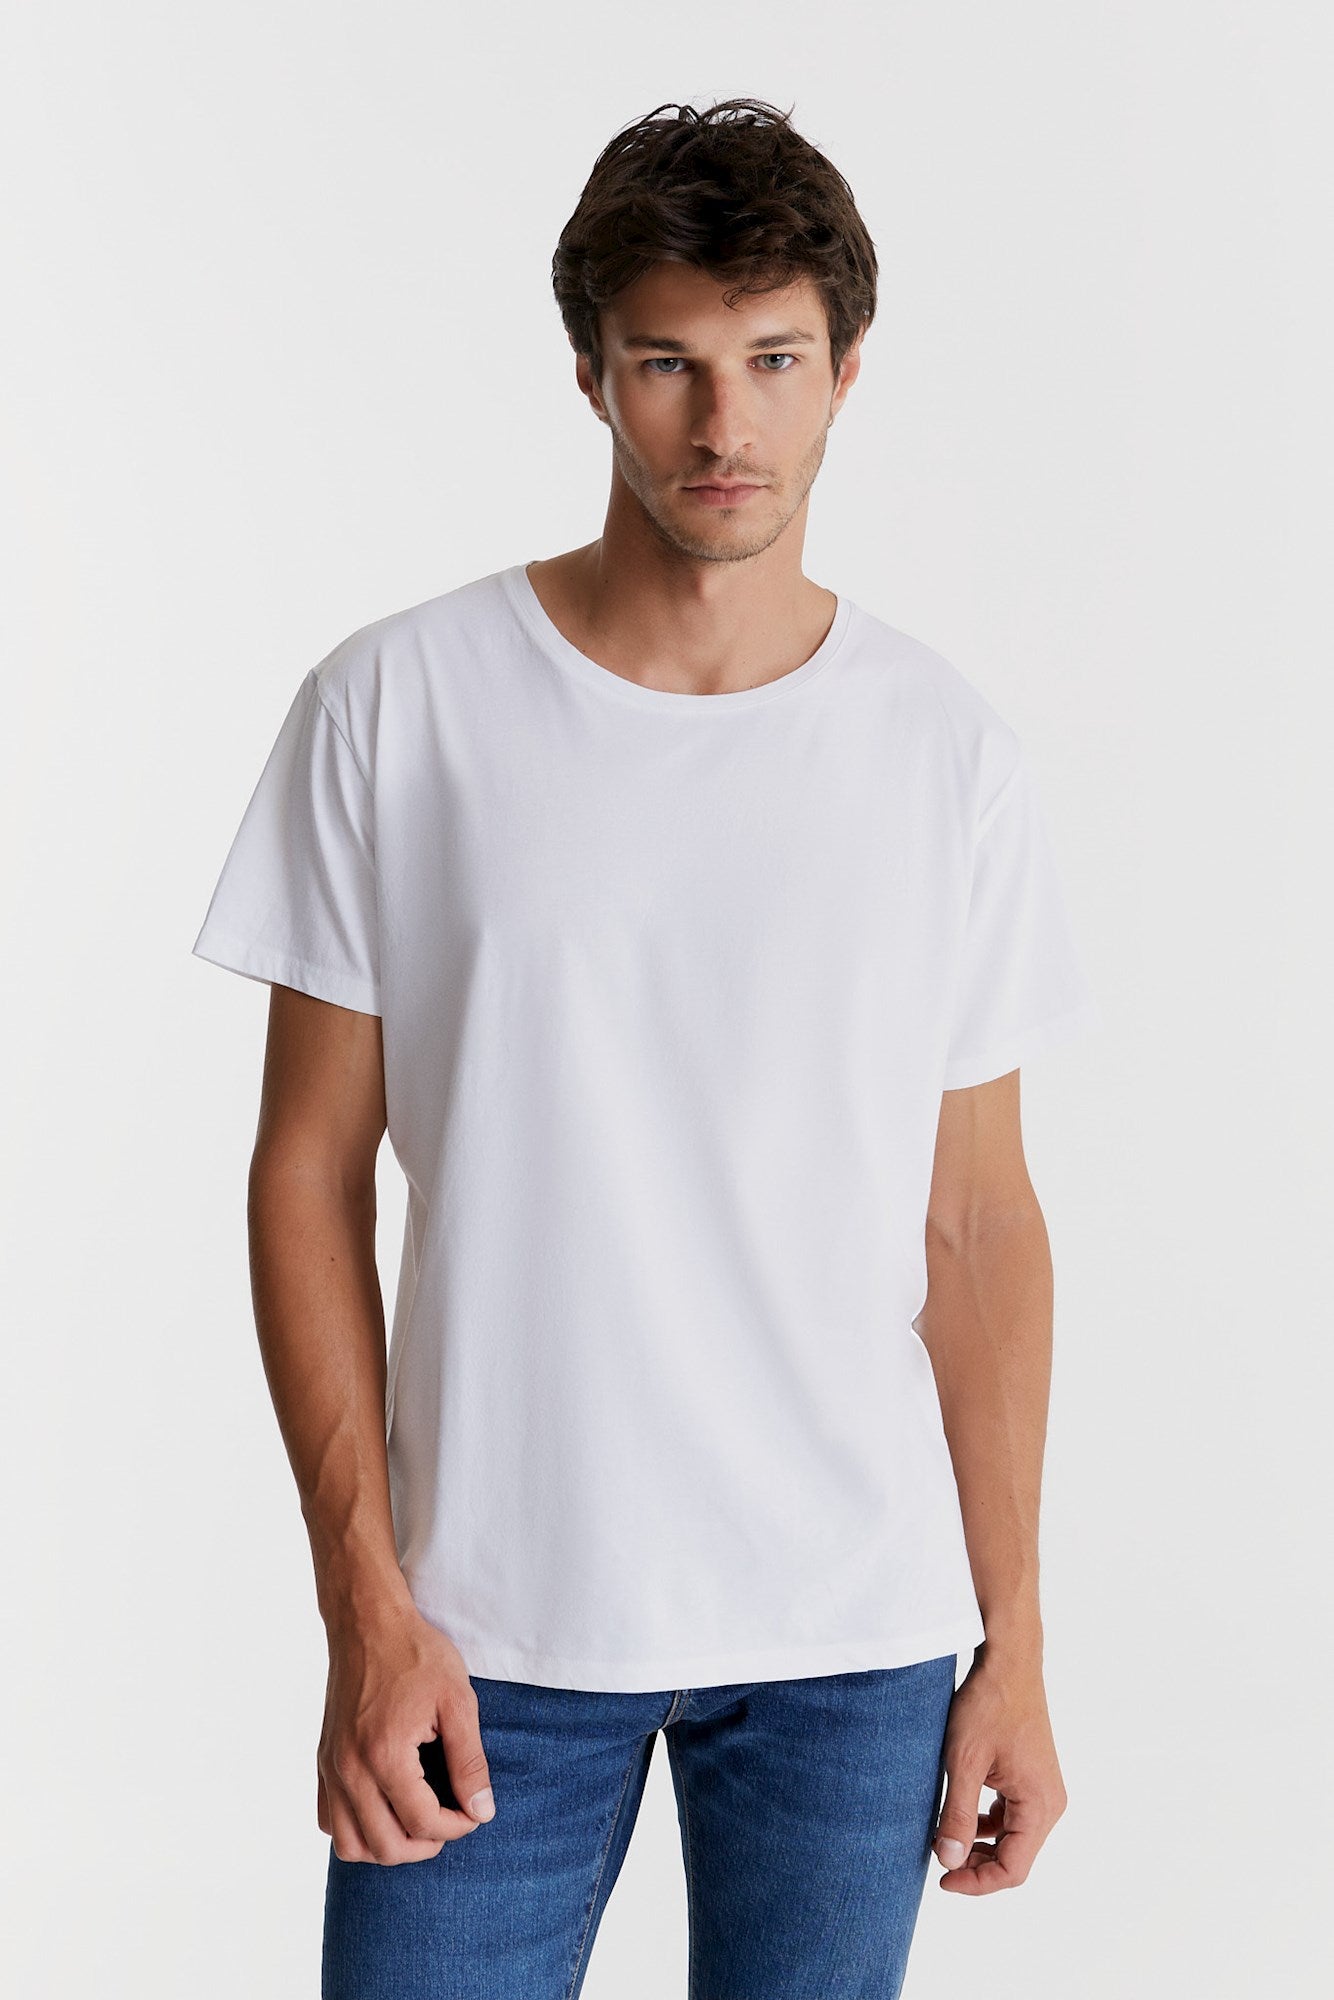 Coy - T-Shirt - Weiß